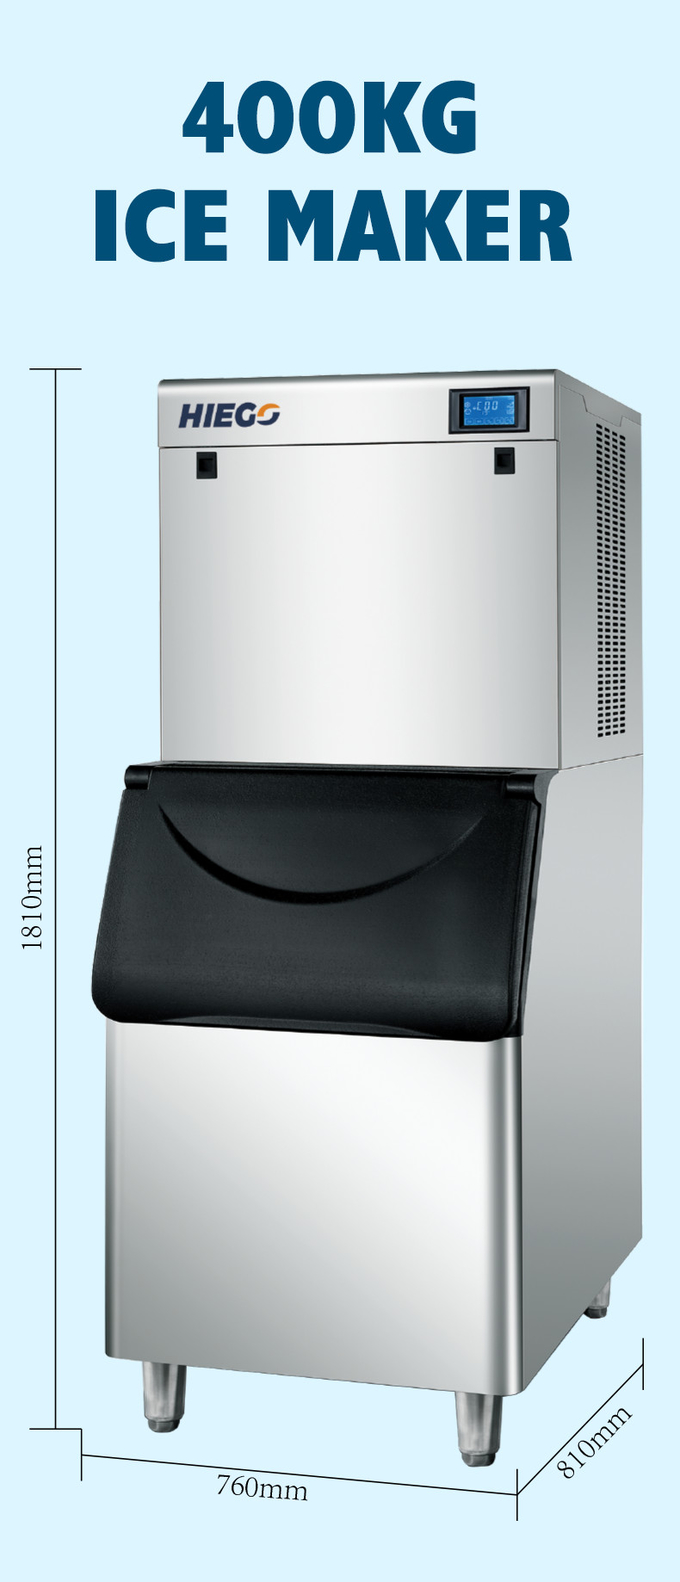 공기 냉각 시스템과 판매 얼음과 400대 킬로그램 / 일 아이스 큐브 제조 기계 7